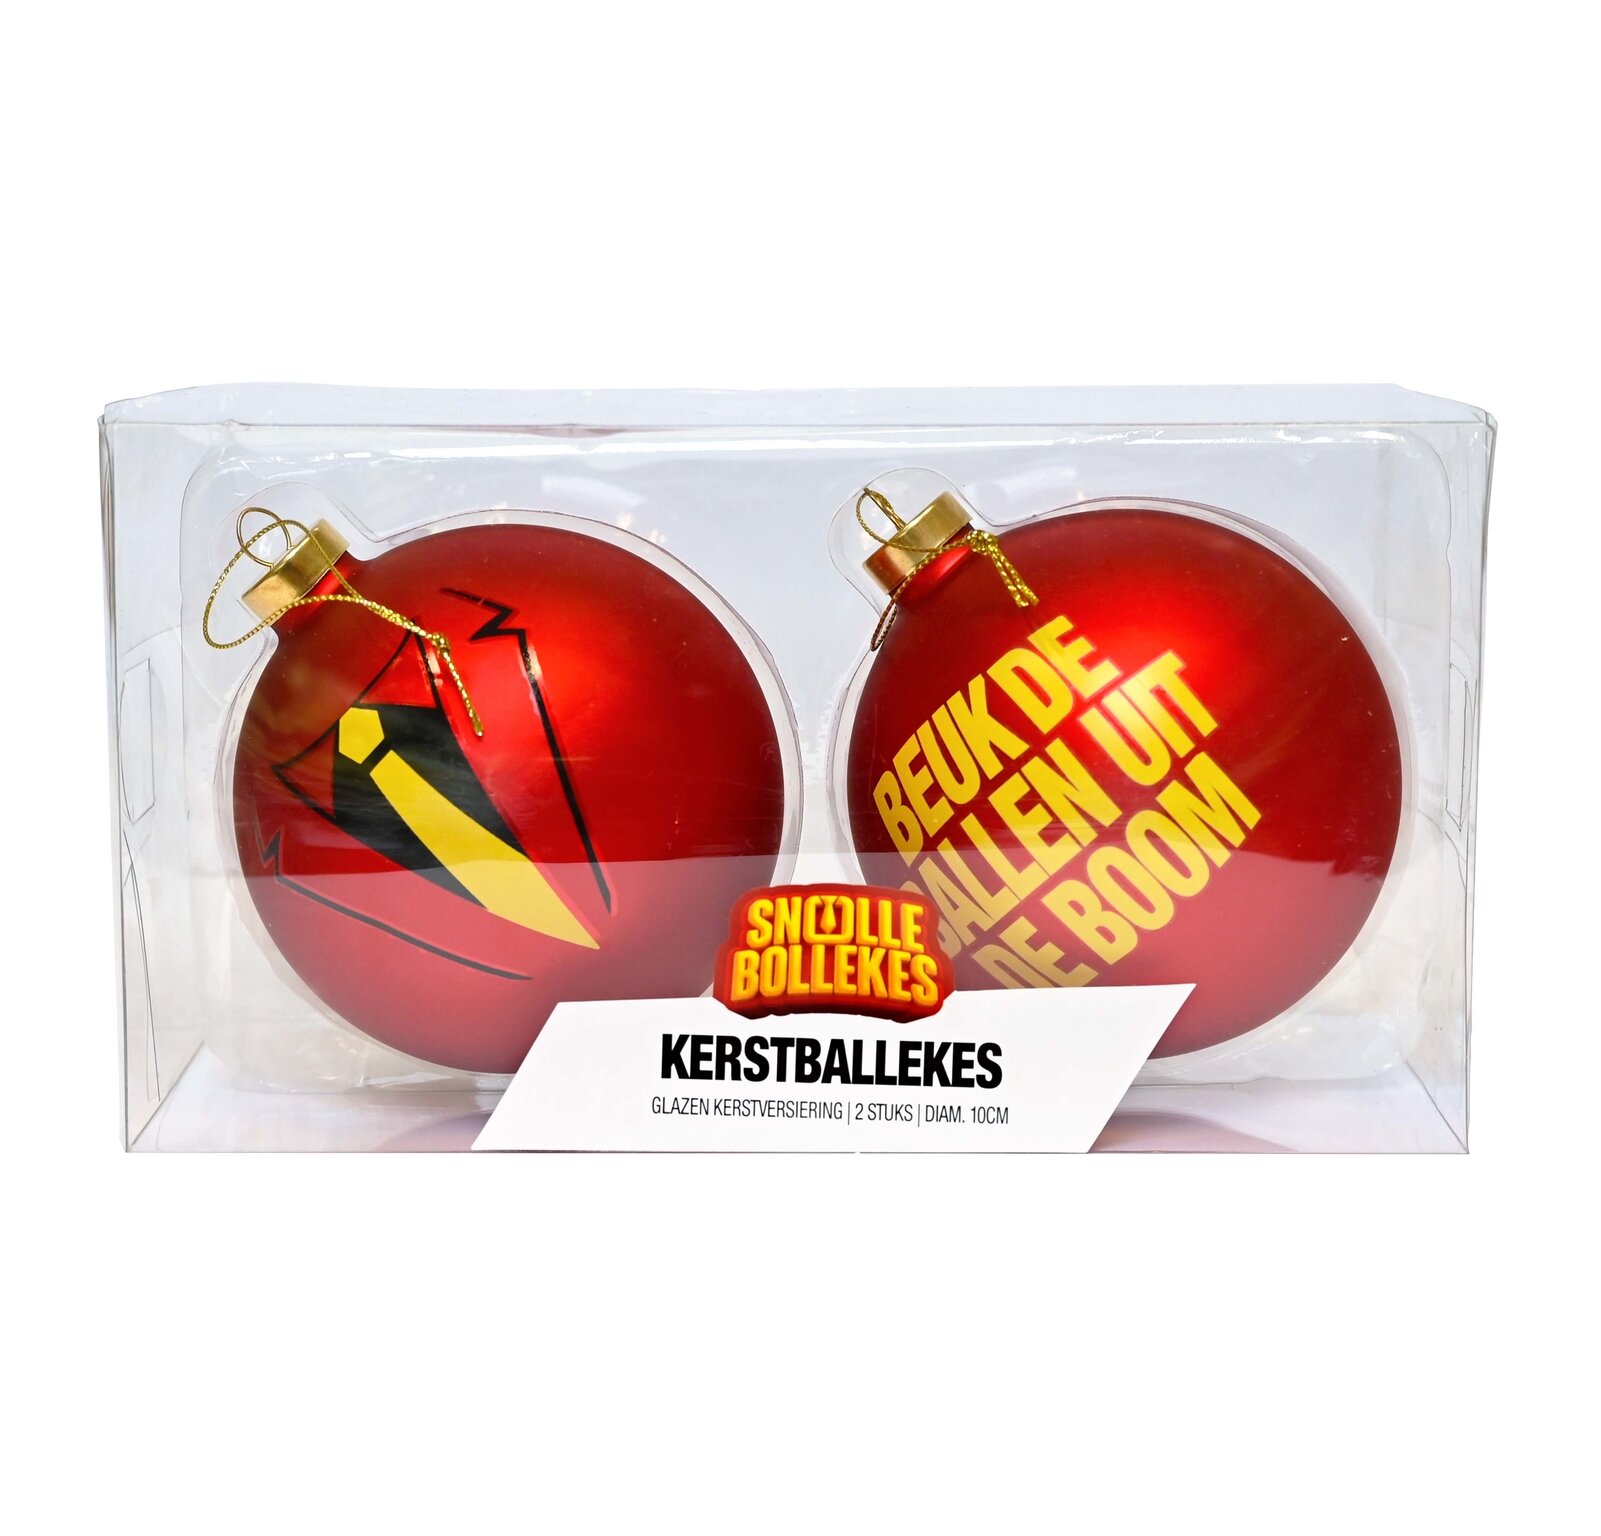 2 Snollebollekes Kerstballen: 'Stropdas' en 'Beuk de ballen', 10cm